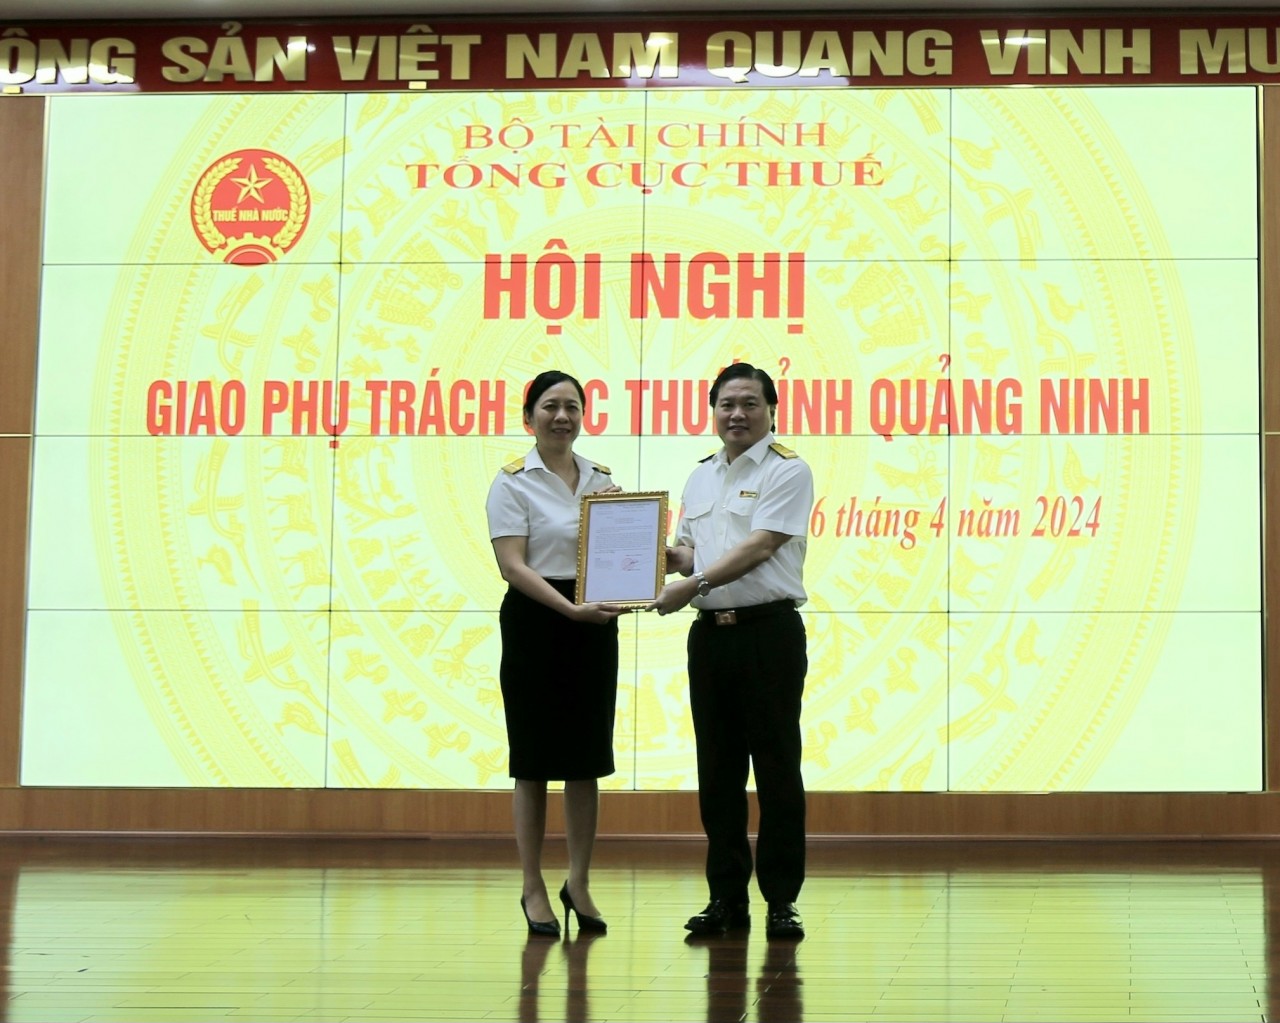 Bà Nguyễn Thị Minh được giao làm Phó Cục trưởng phụ trách Cục Thuế tỉnh Quảng Ninh